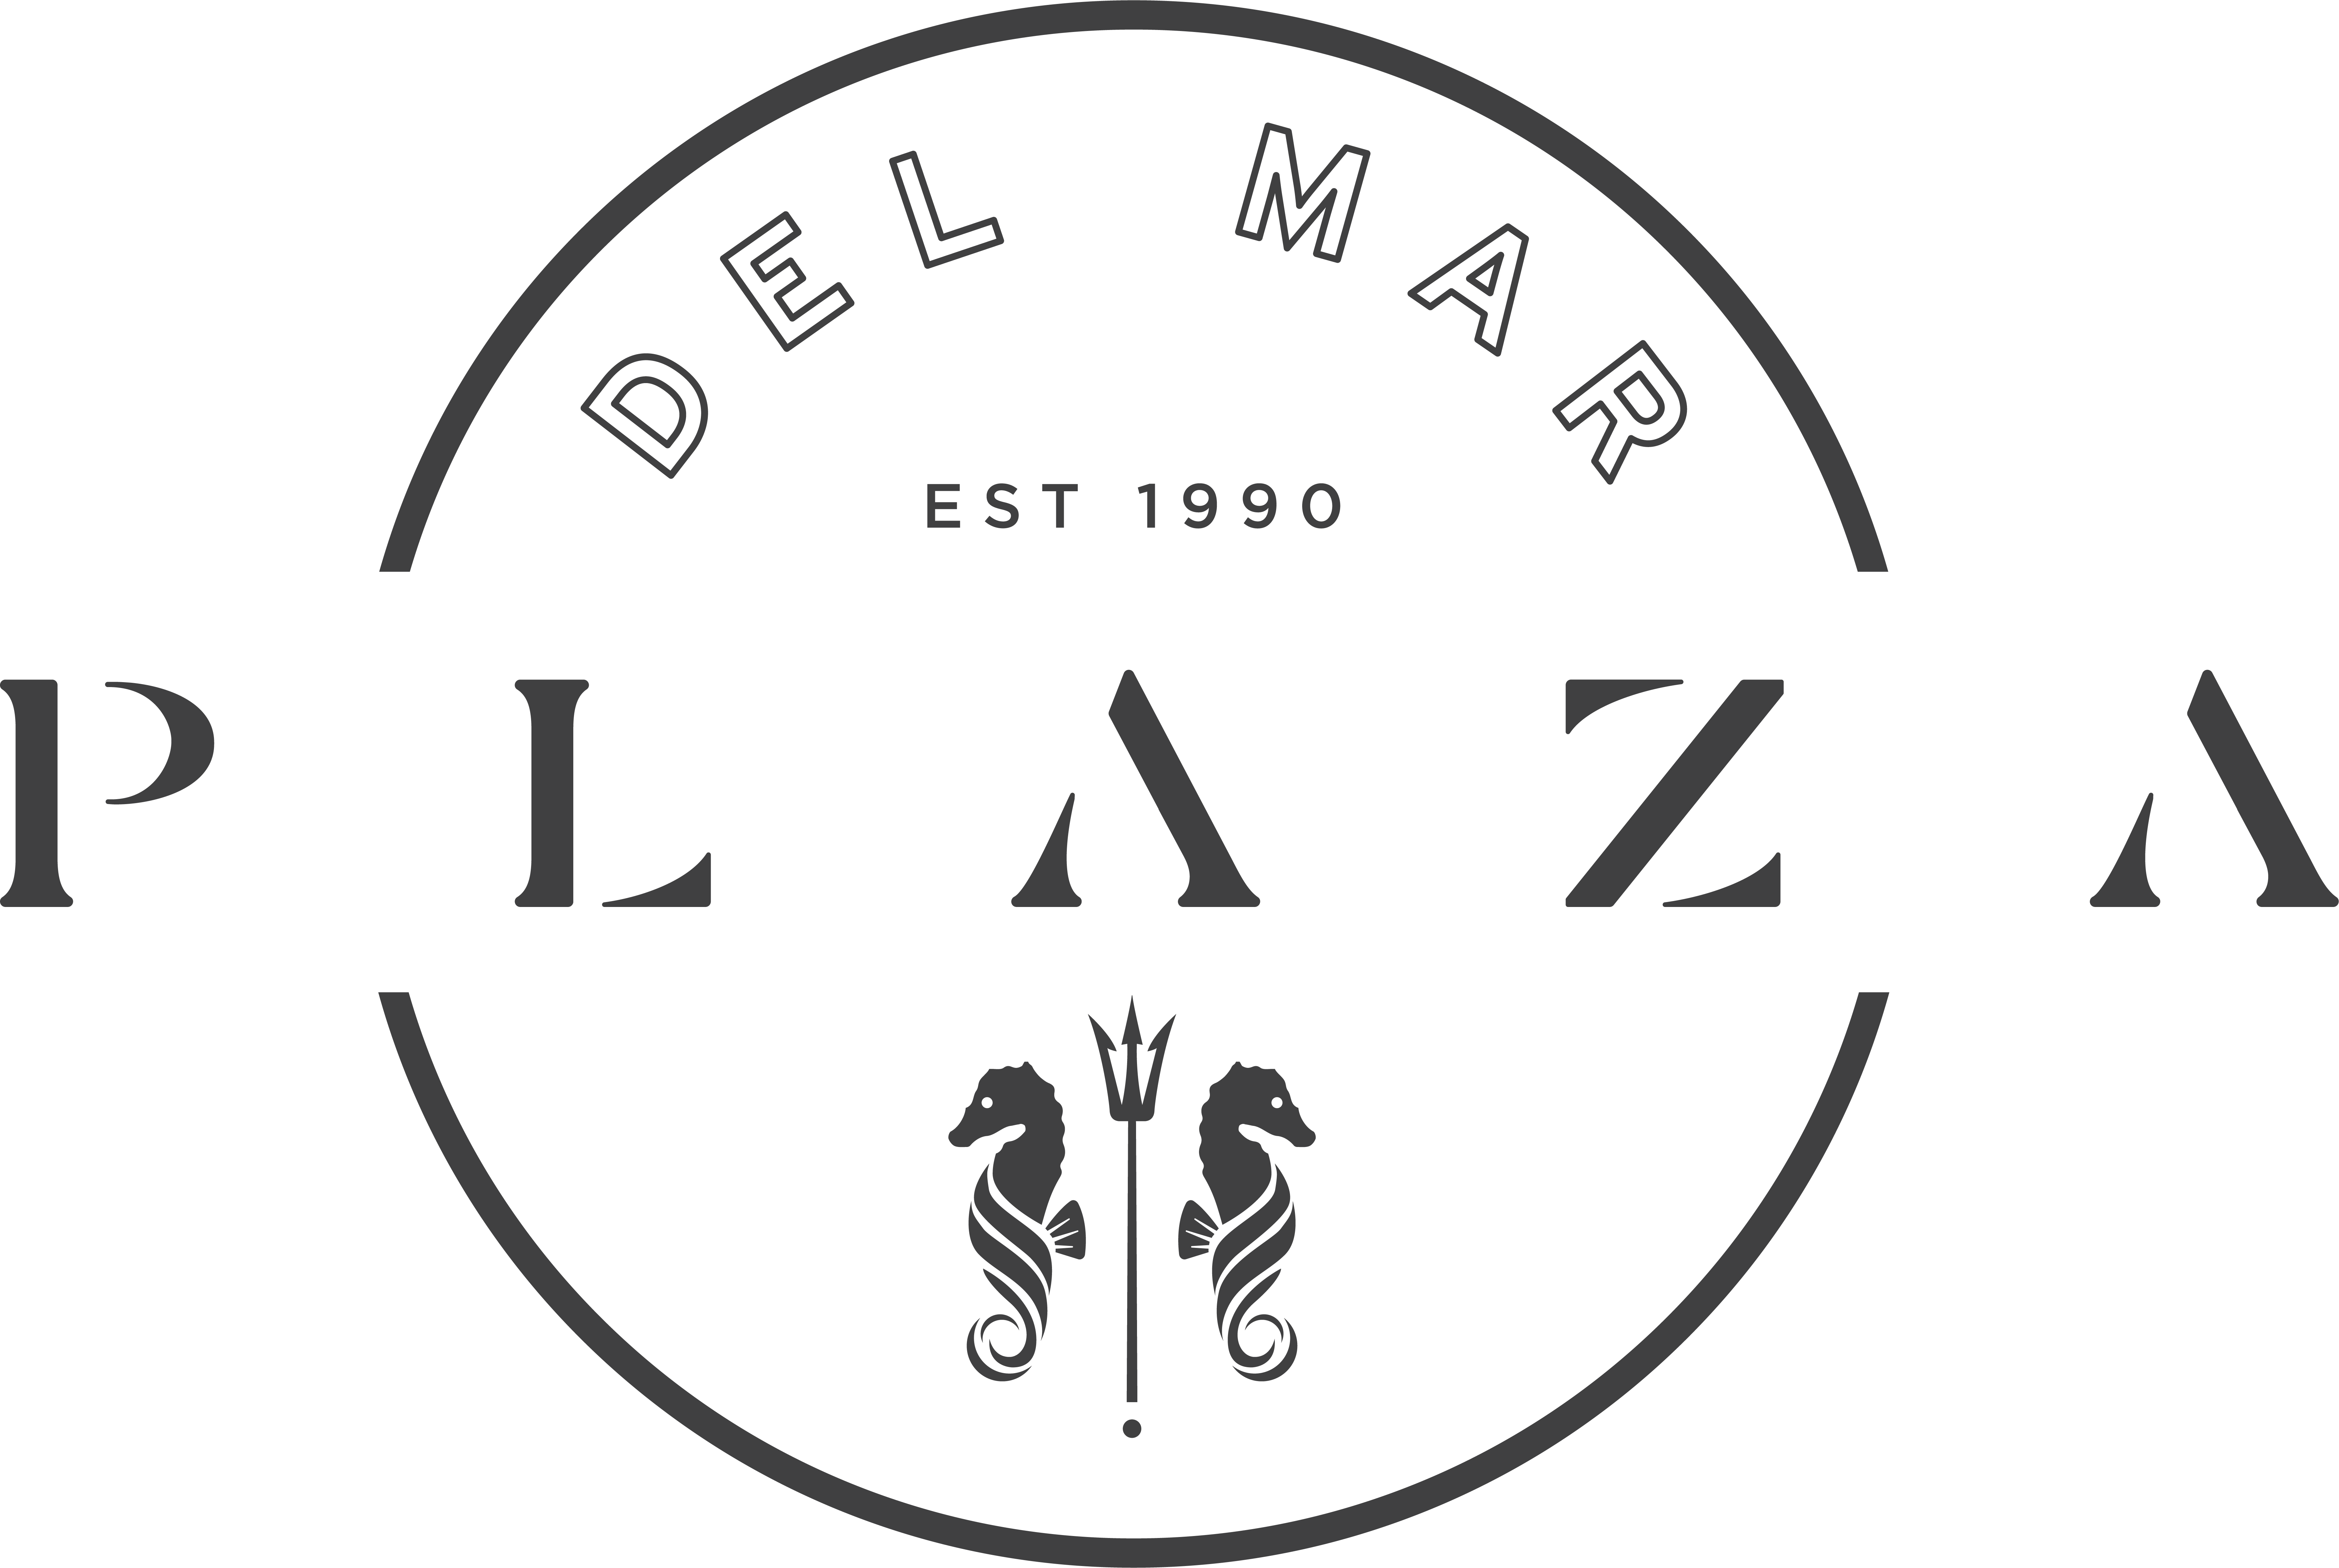 D - Del Mar Plaza